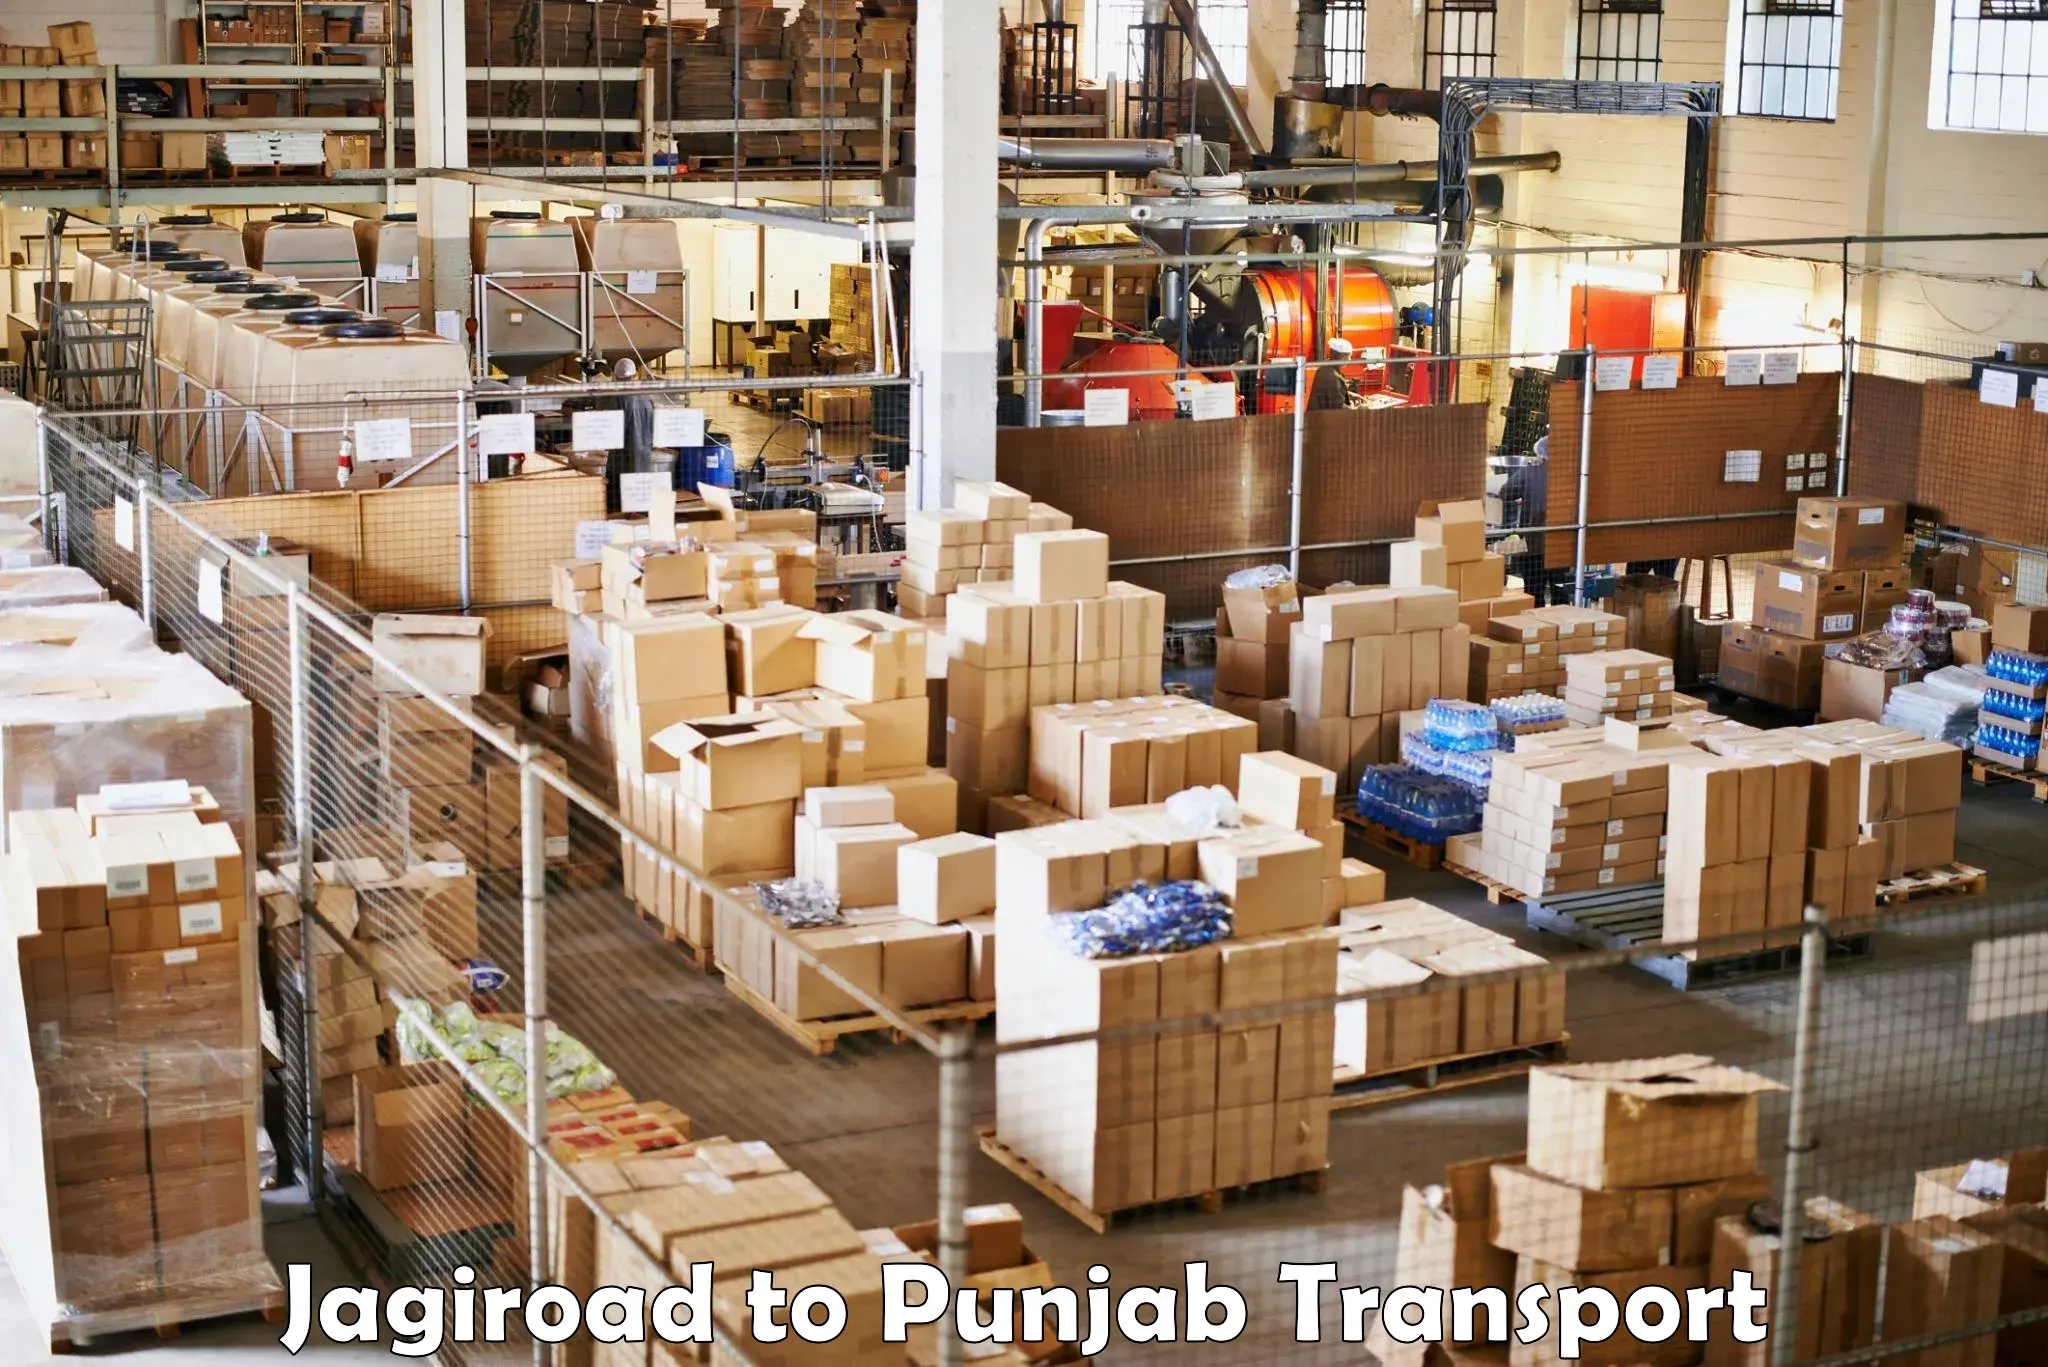 Furniture transport service Jagiroad to Punjab